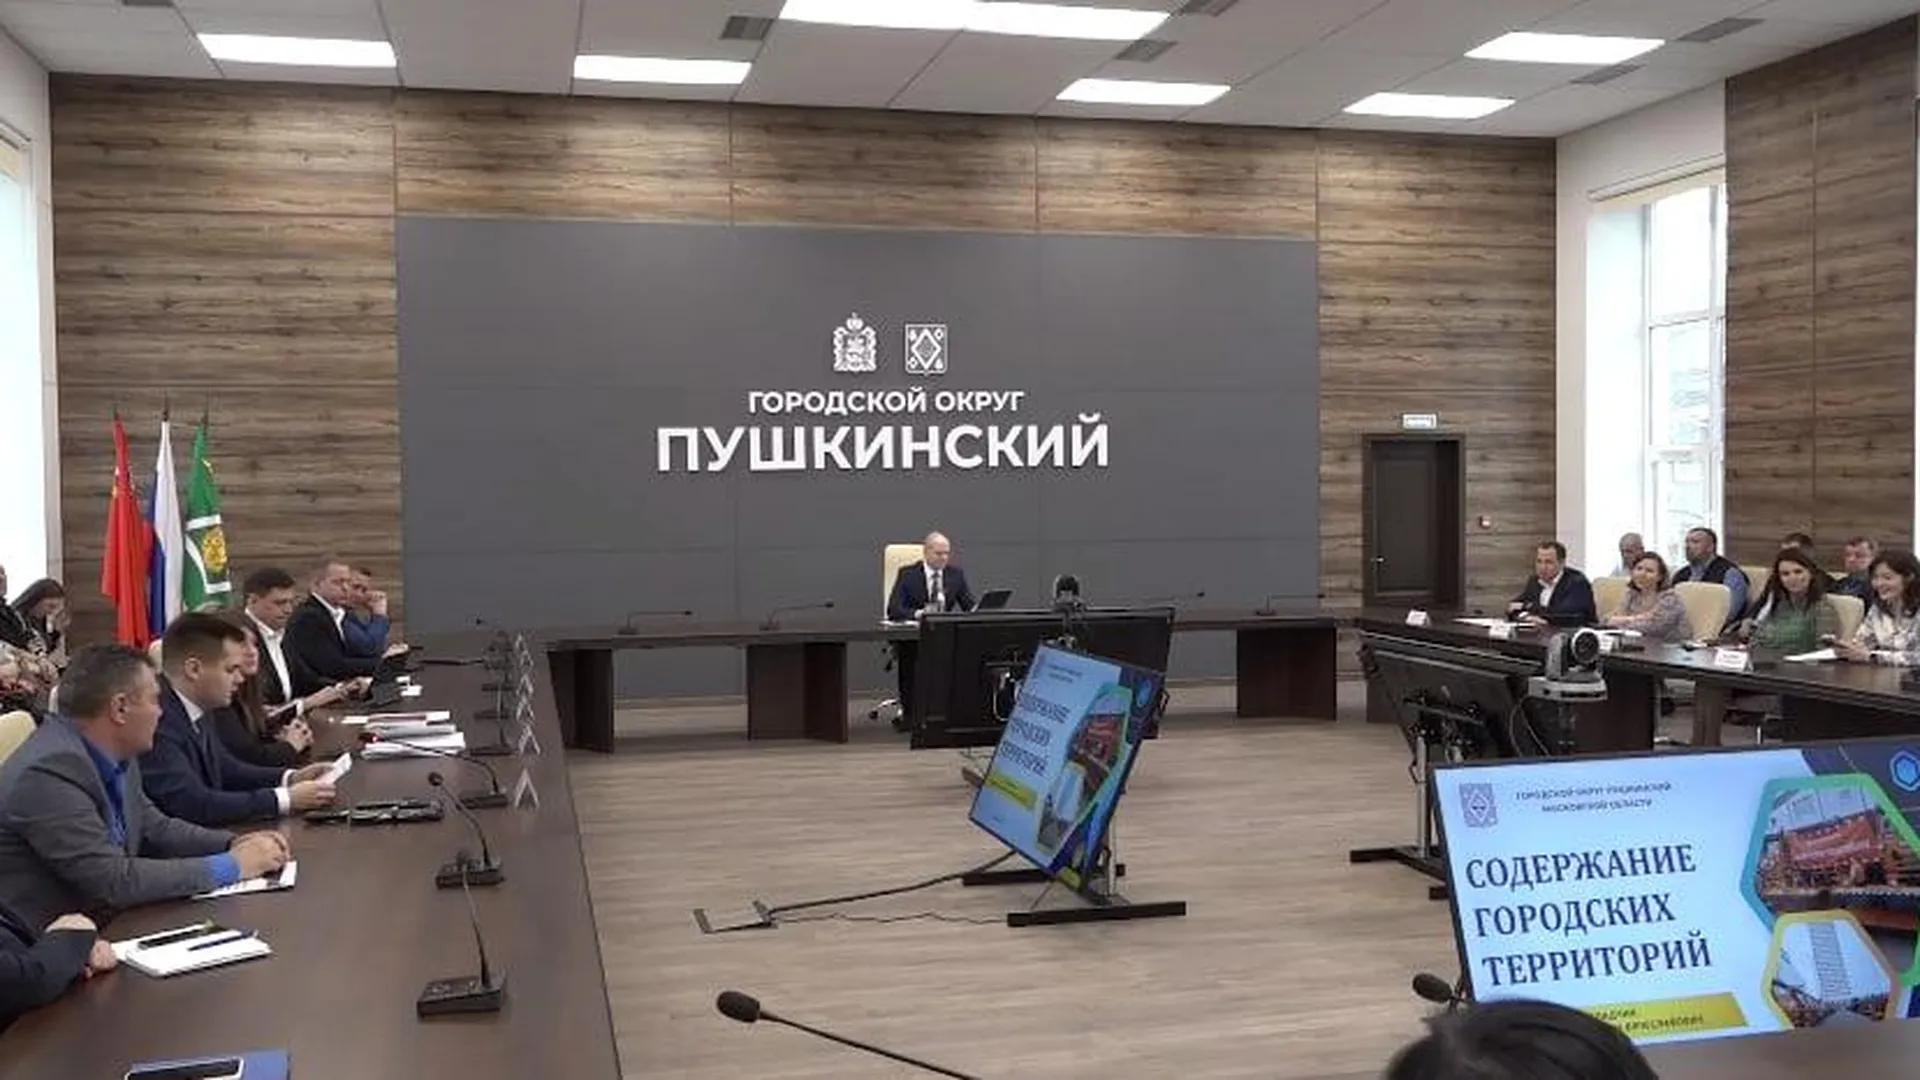 В округе Пушкинский провели оперативное совещание: обсудили подтопление, подвели итоги выборов президента